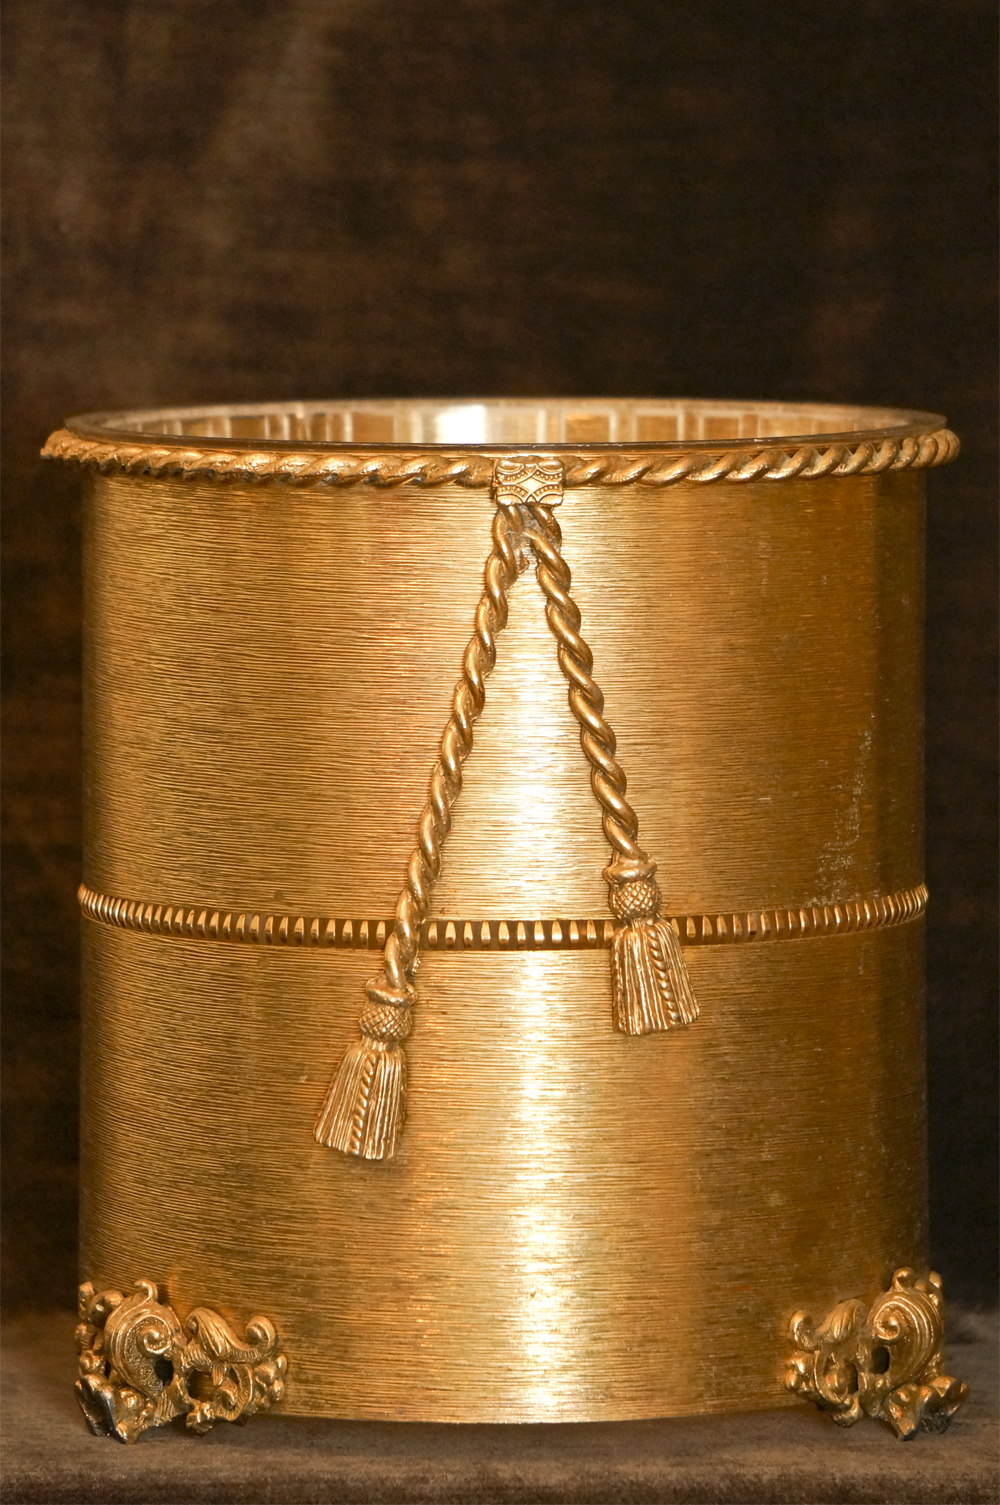 Sold:スタイルビルト製 ゴールド ロープ ゴミ箱